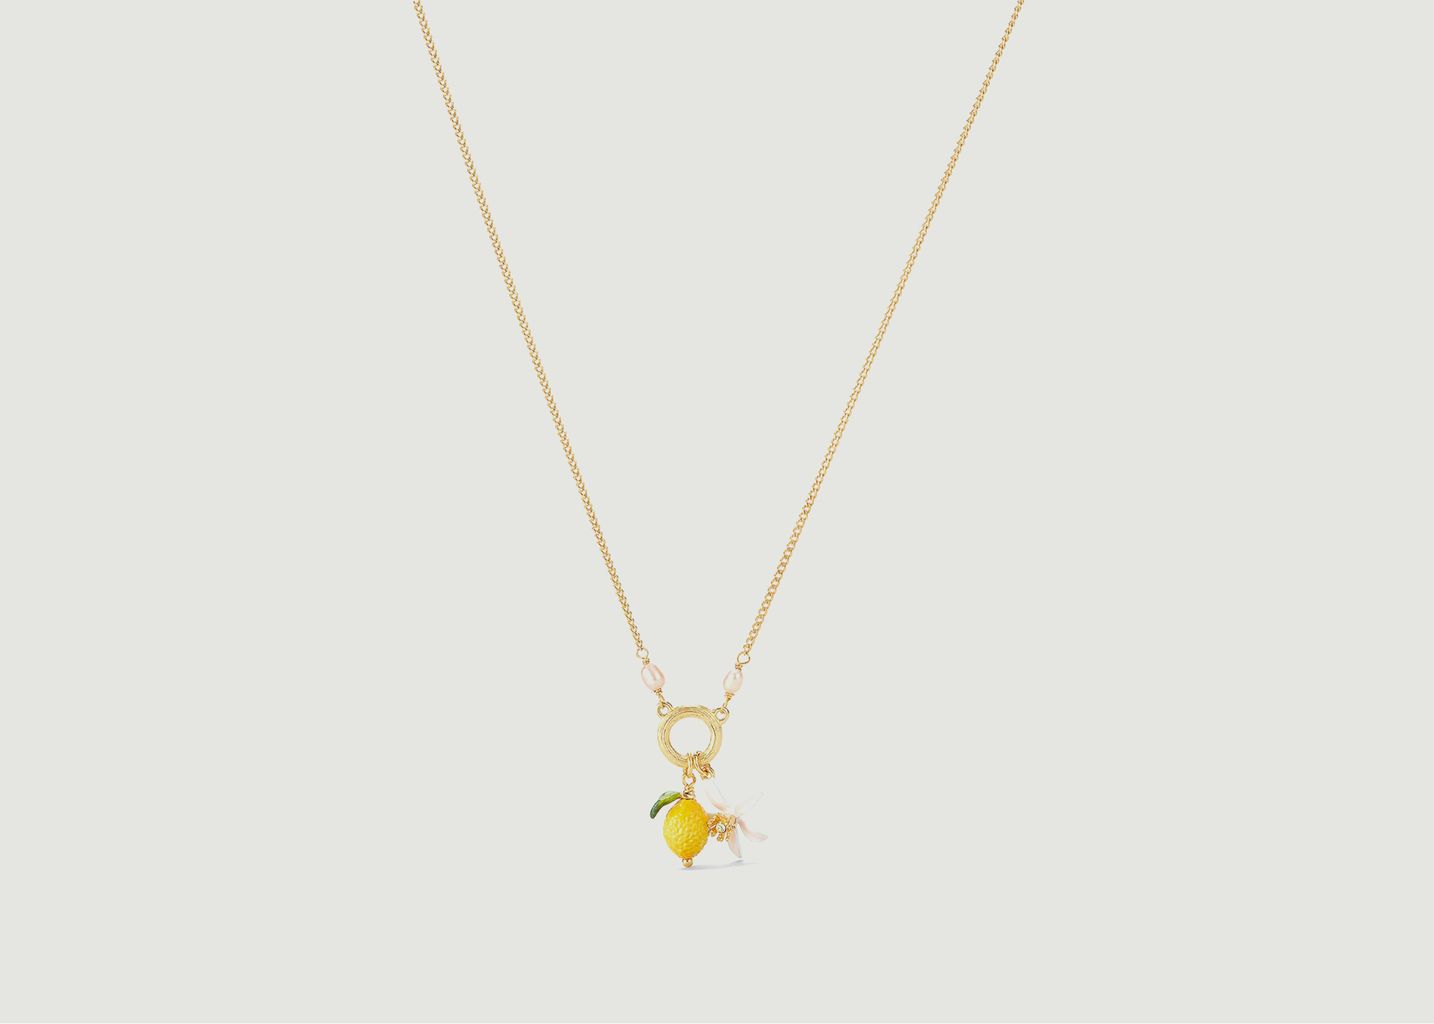 Collier pendentif citron et fleur de citronnier - Les Néréides